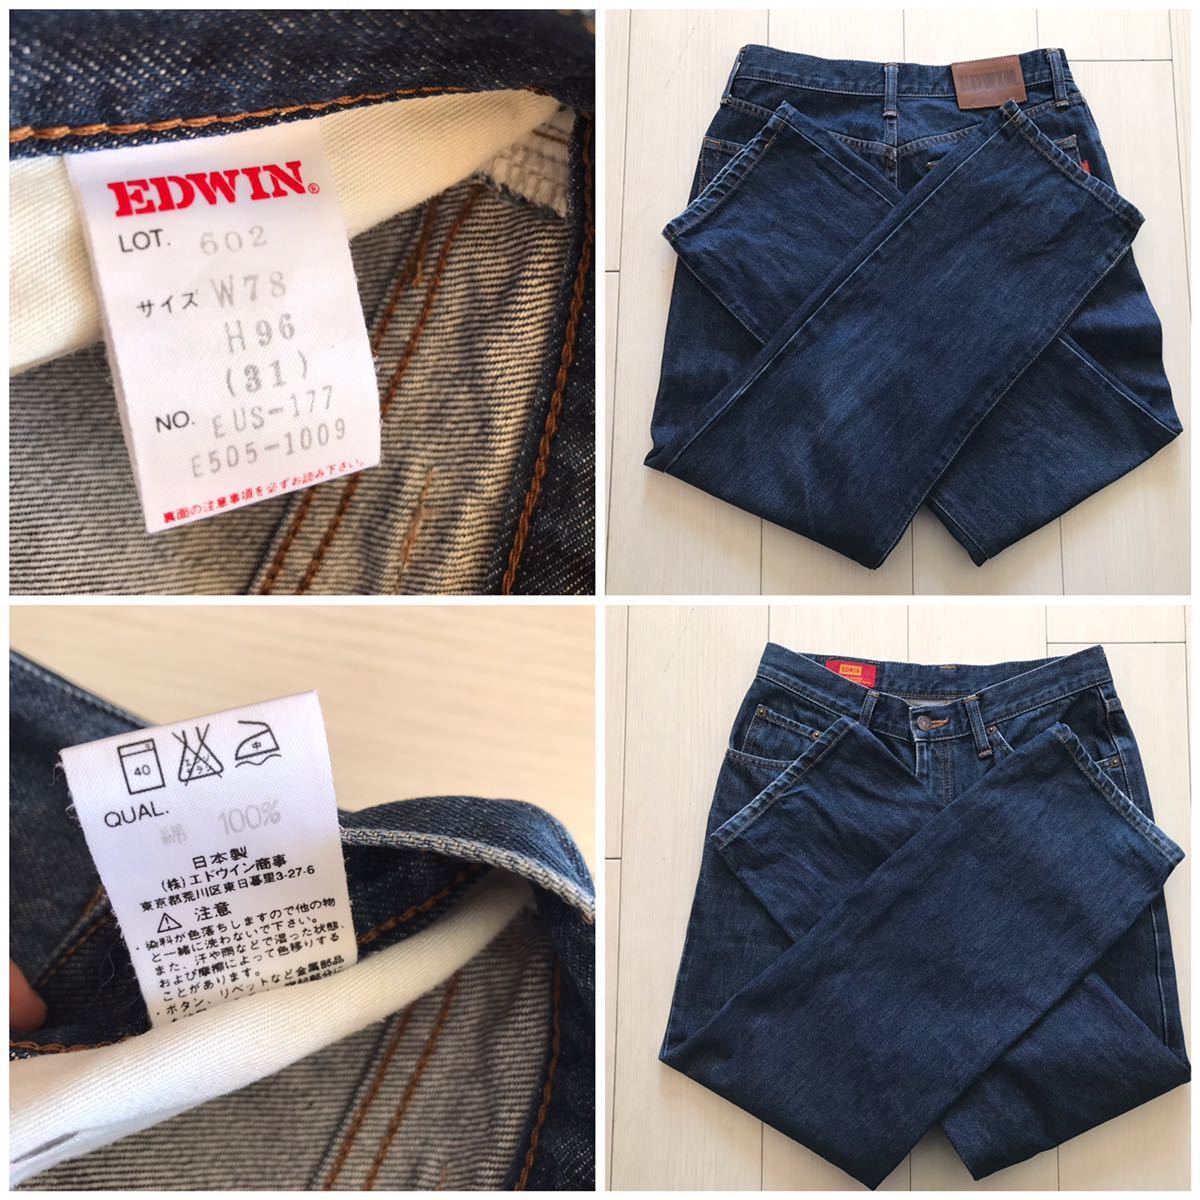 [ быстрое решение ]W31 Edwin EDWIN 602 распорка джинсы US Classic ... хлопок 100% сделано в Японии Denim снят с производства 